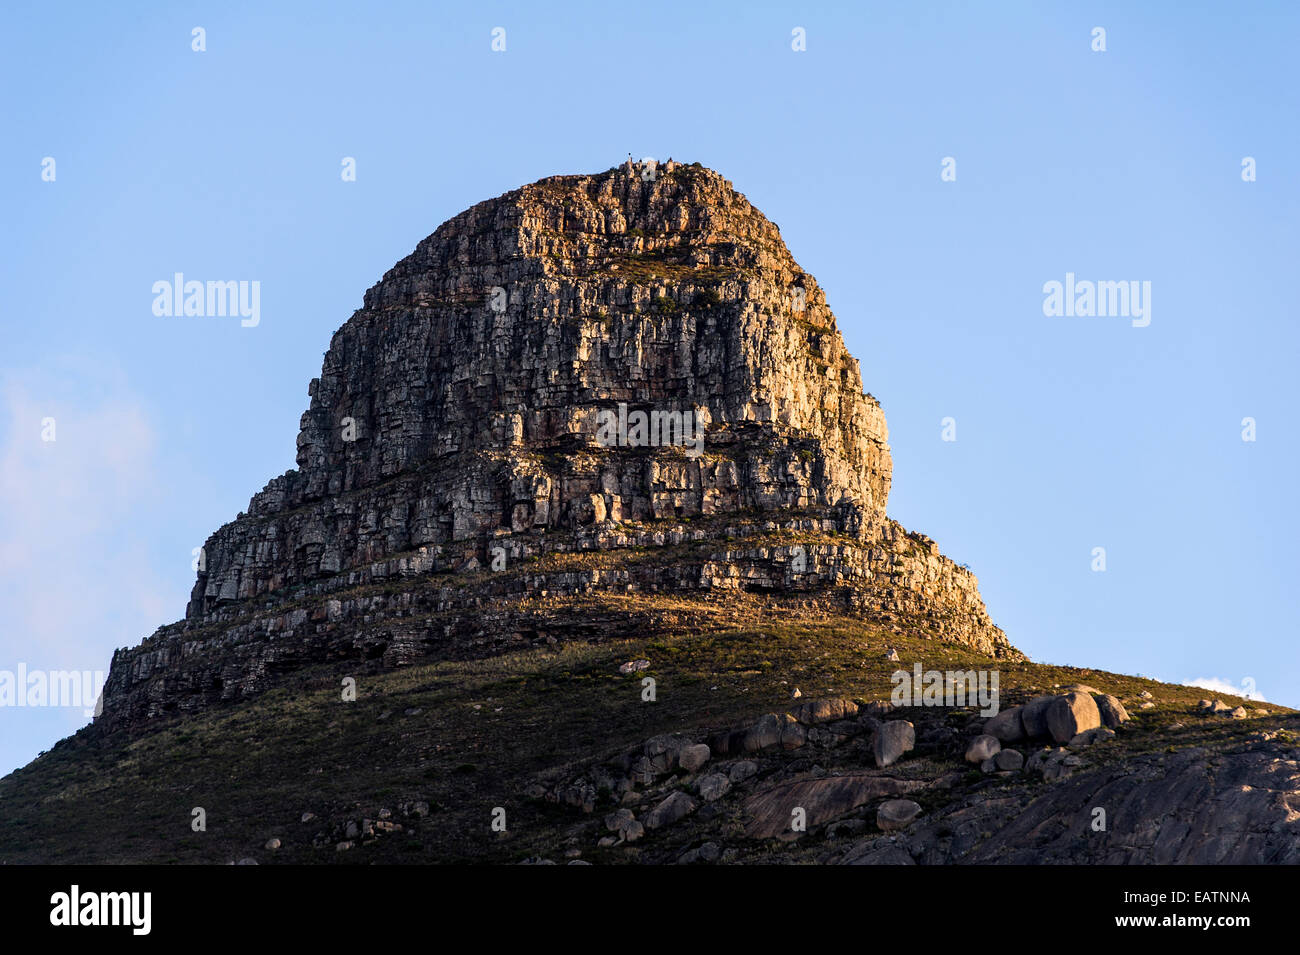 Le robuste de la tête de lion de la falaise s'élève dans le ciel au-dessus de la ville du Cap. Banque D'Images